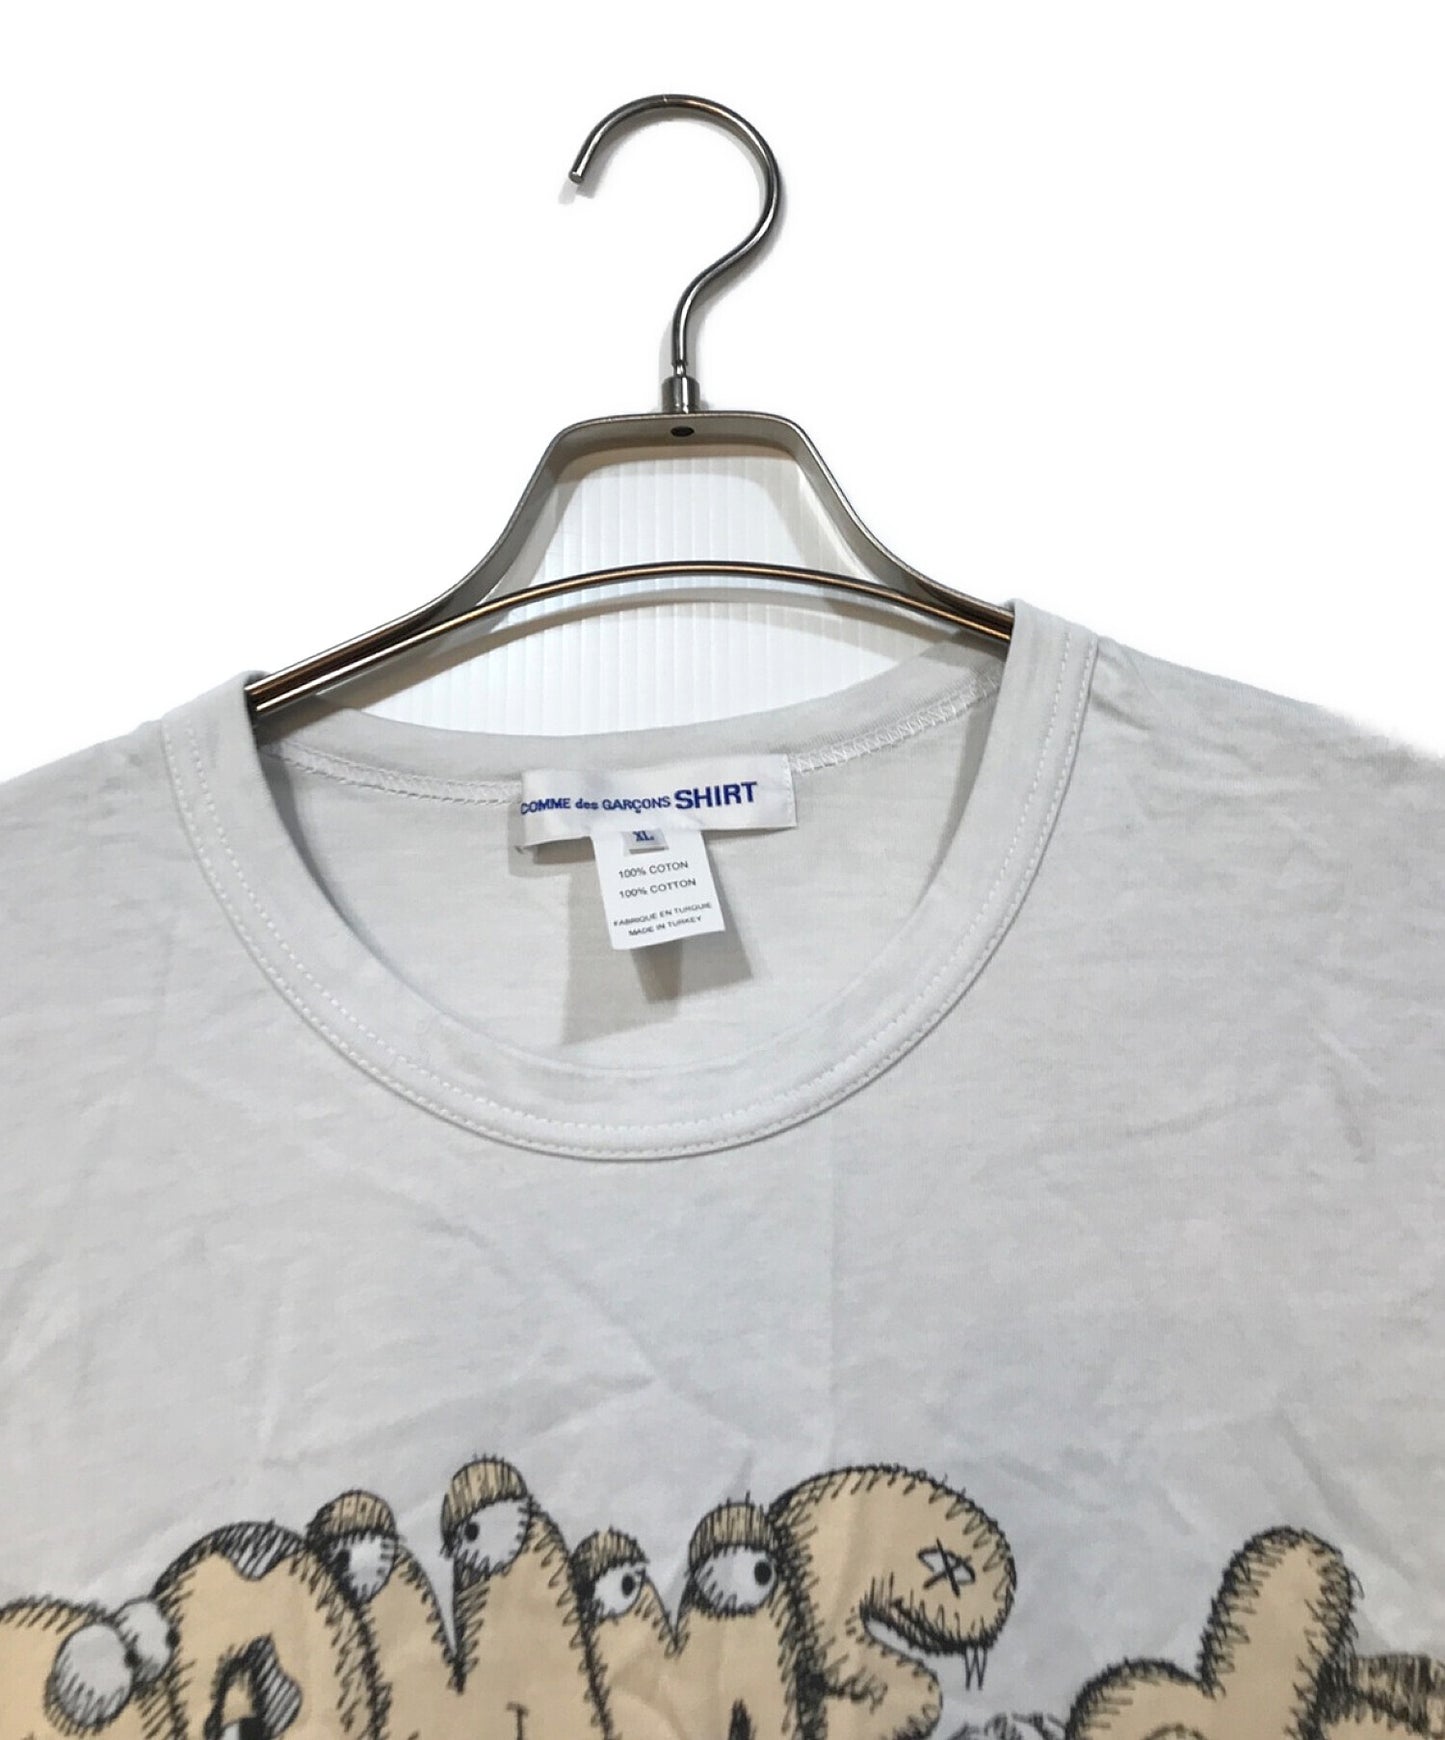 Comme des Garcons 셔츠 × Kaws 인쇄 티셔츠 FH-T005